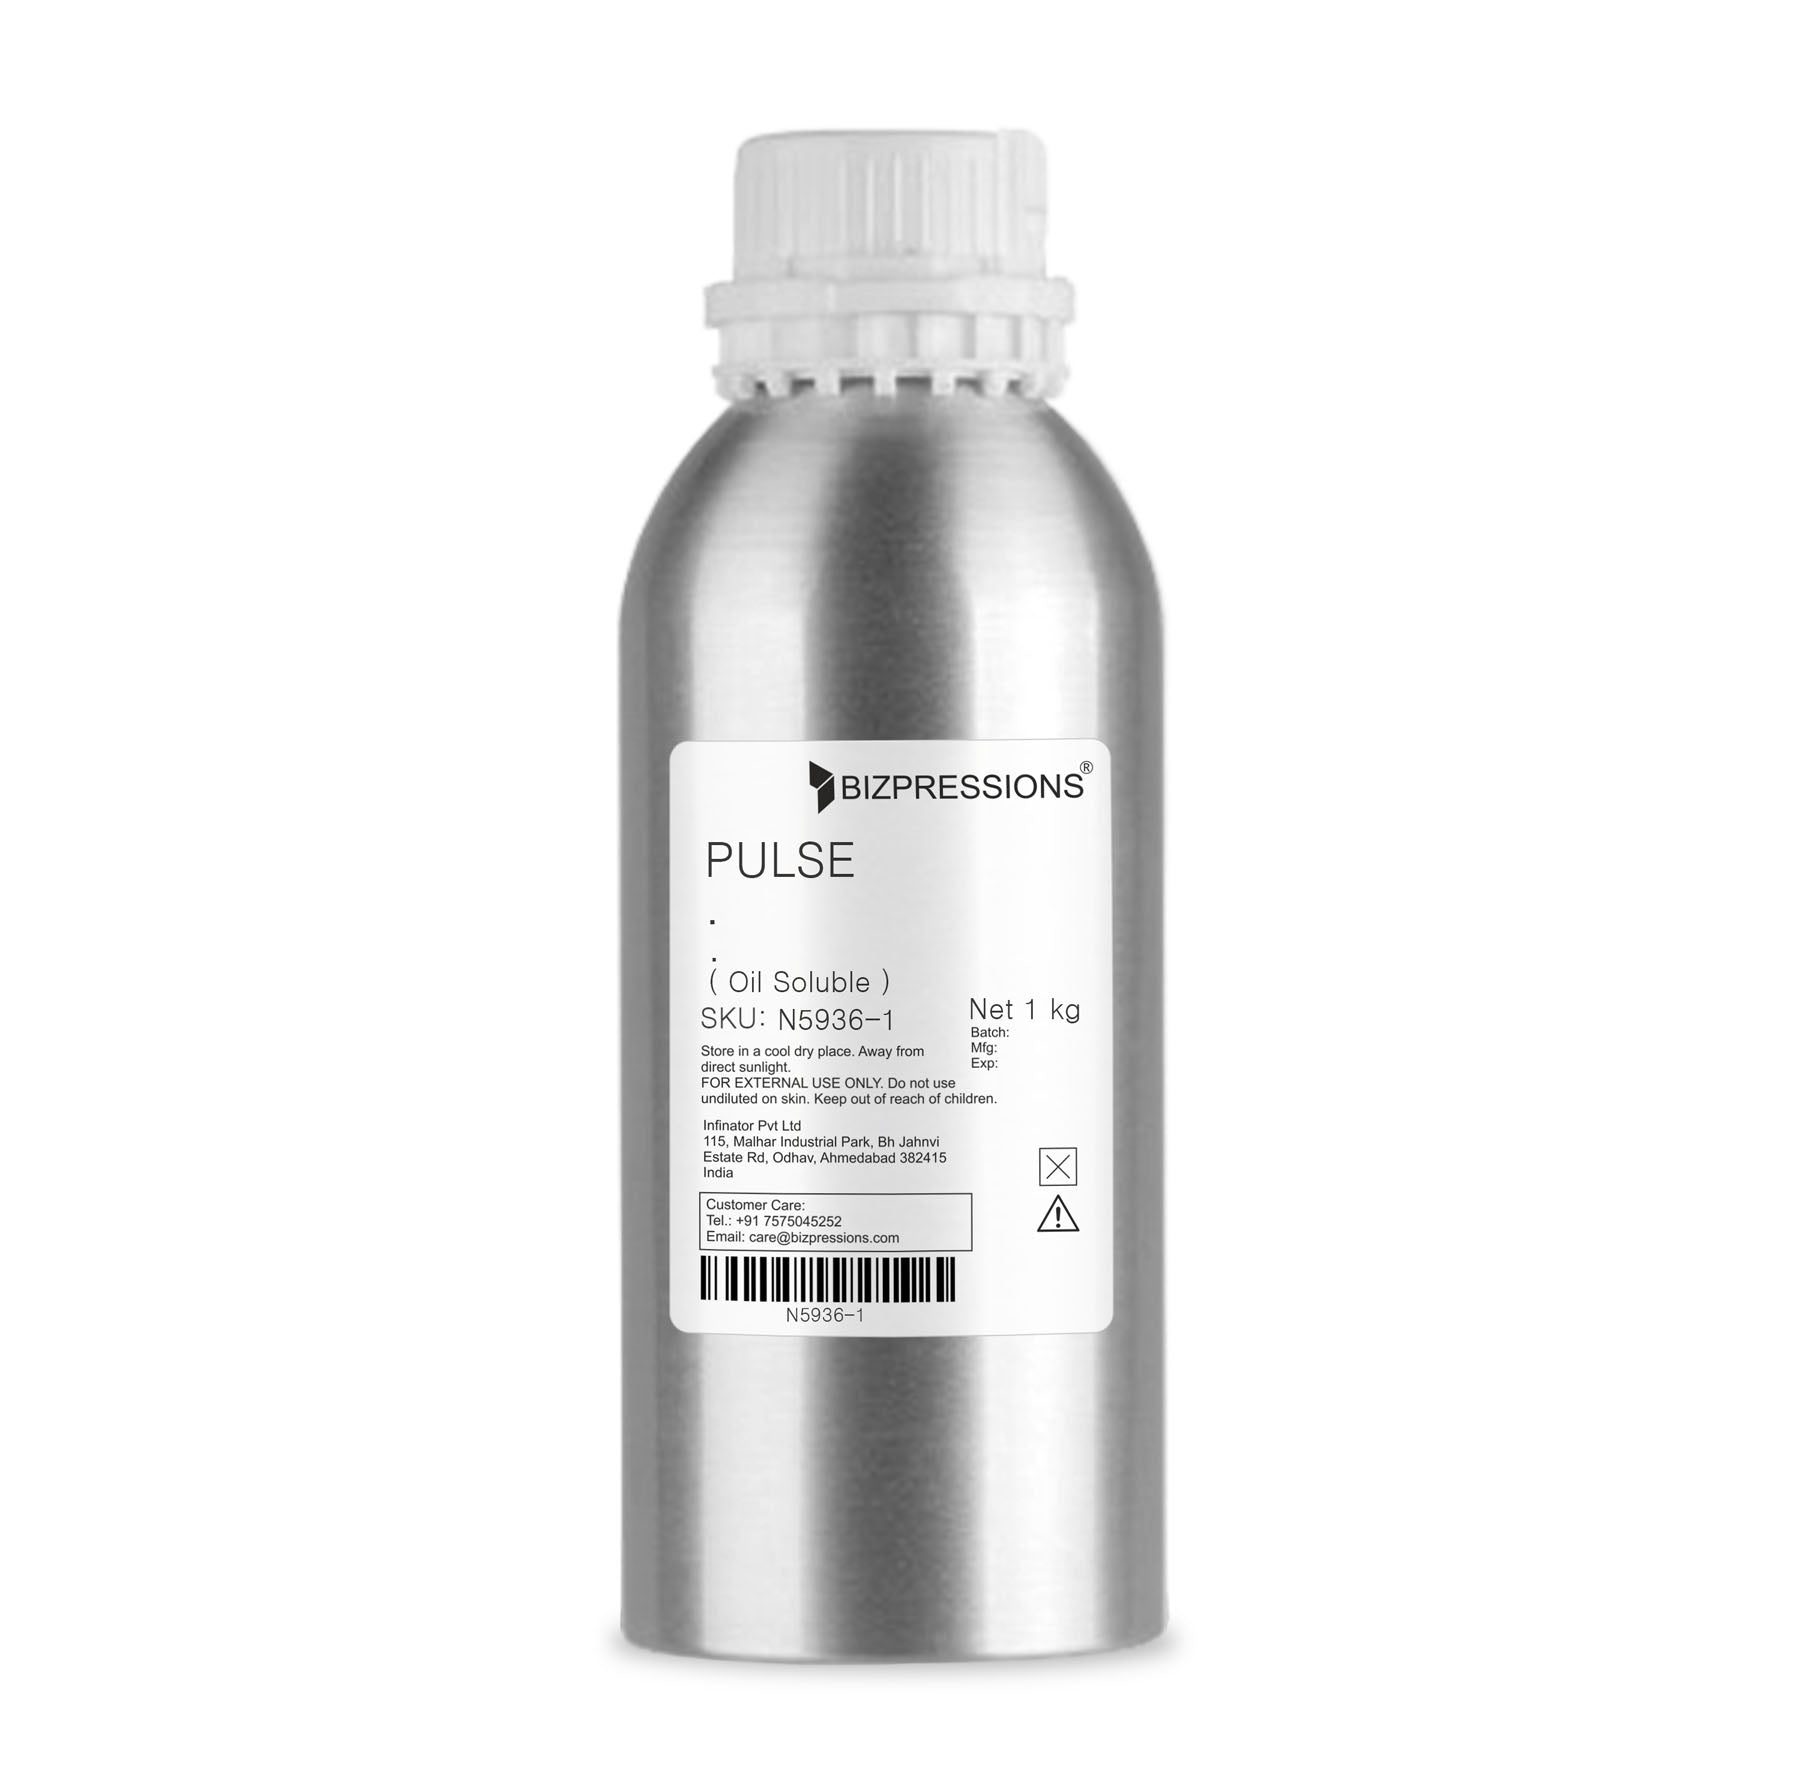 PULSE - Fragrance ( Oil Soluble ) - 1 kg